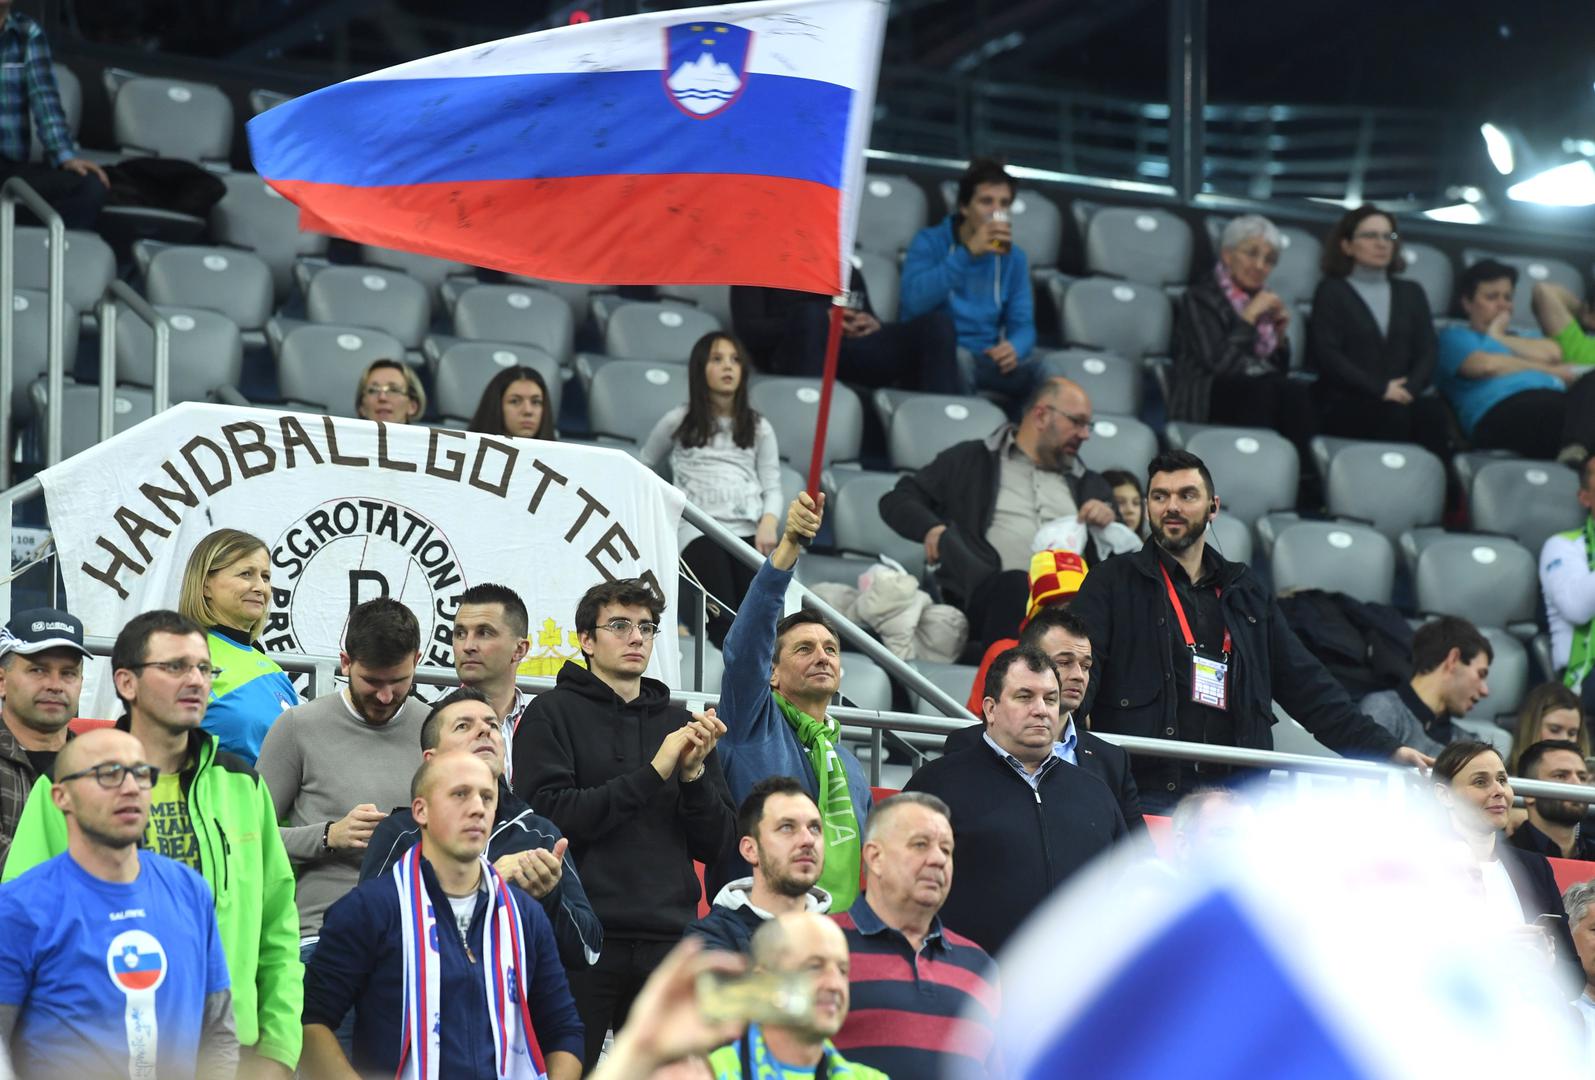 Rukometna reprezentacija Slovenije svladala je Crnu Goru sa 28:19 i prošla u drugi krug Europskog prvenstva